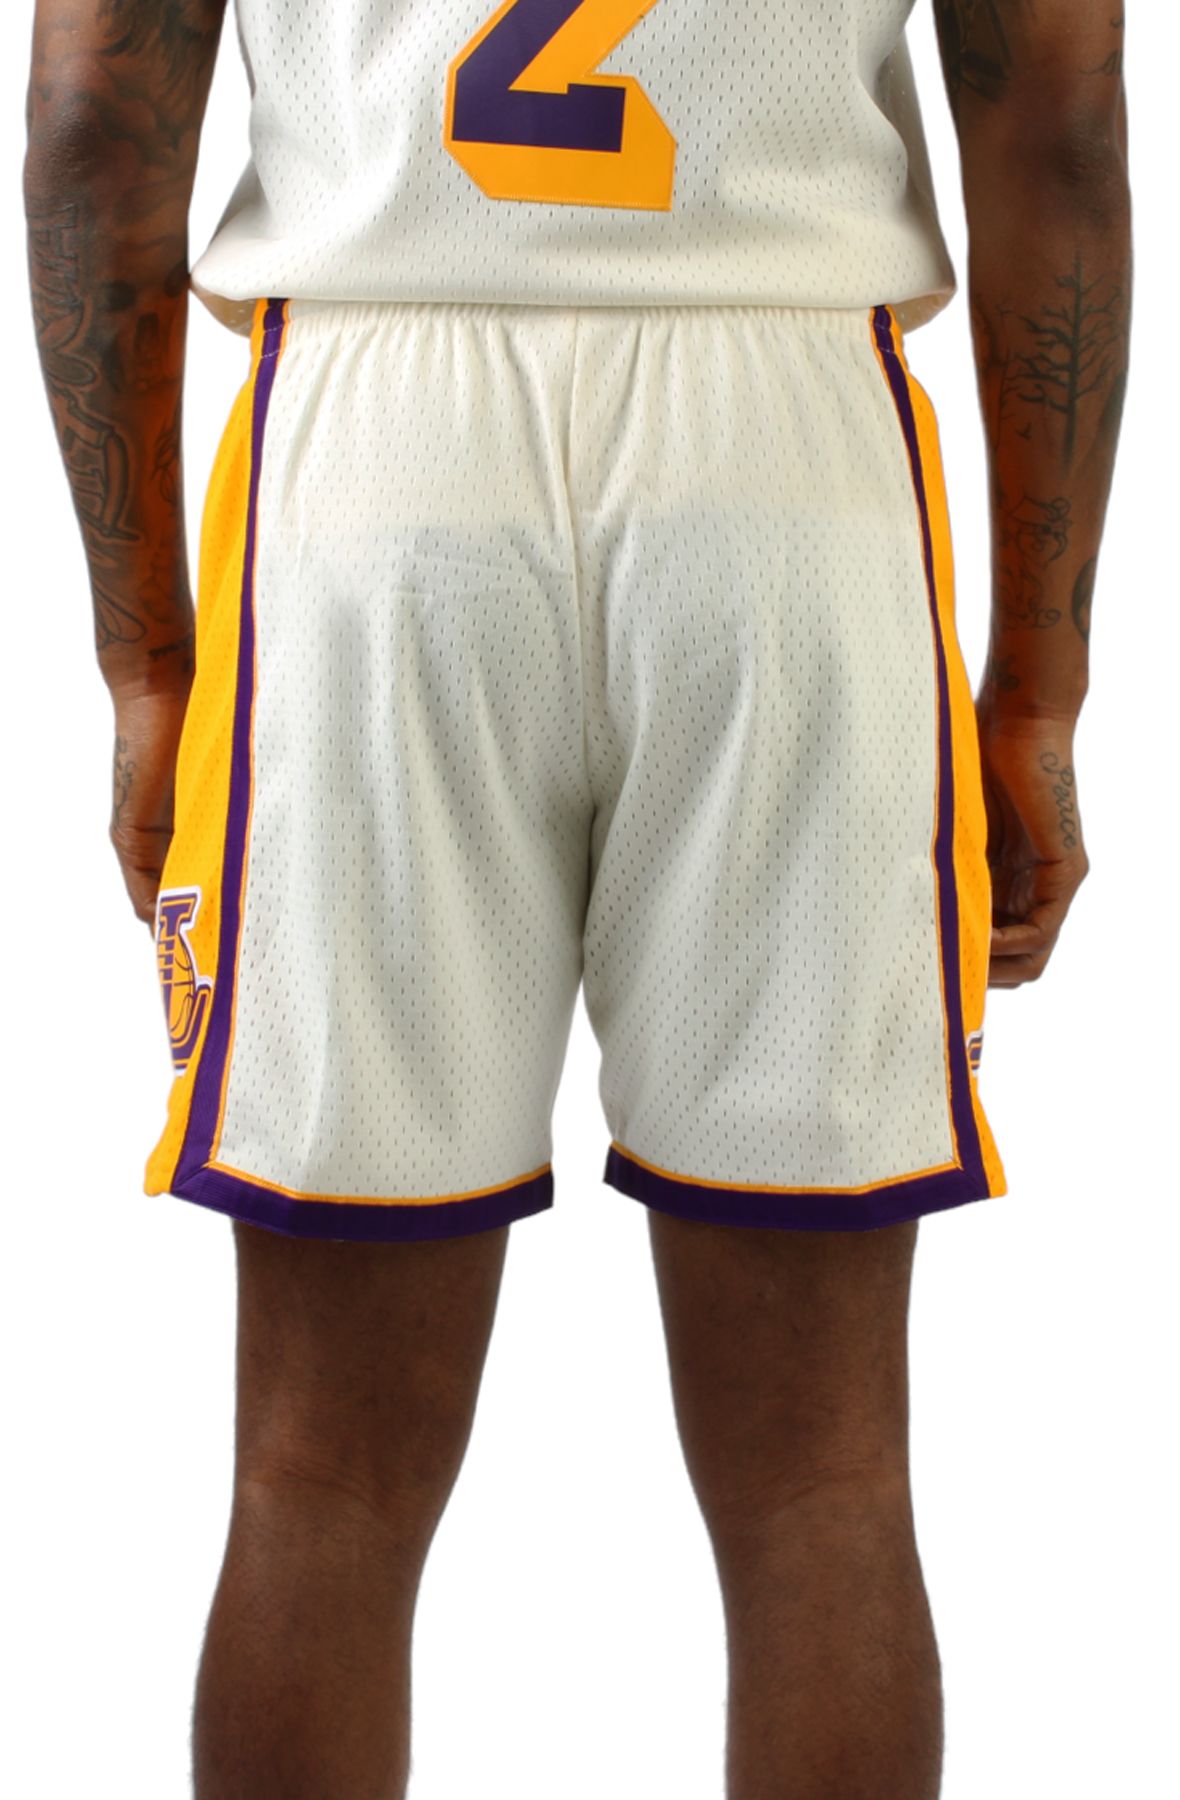 MITCHELL & NESS NBA Monochrome Swingman Shorts LA Lakers 2009 (M